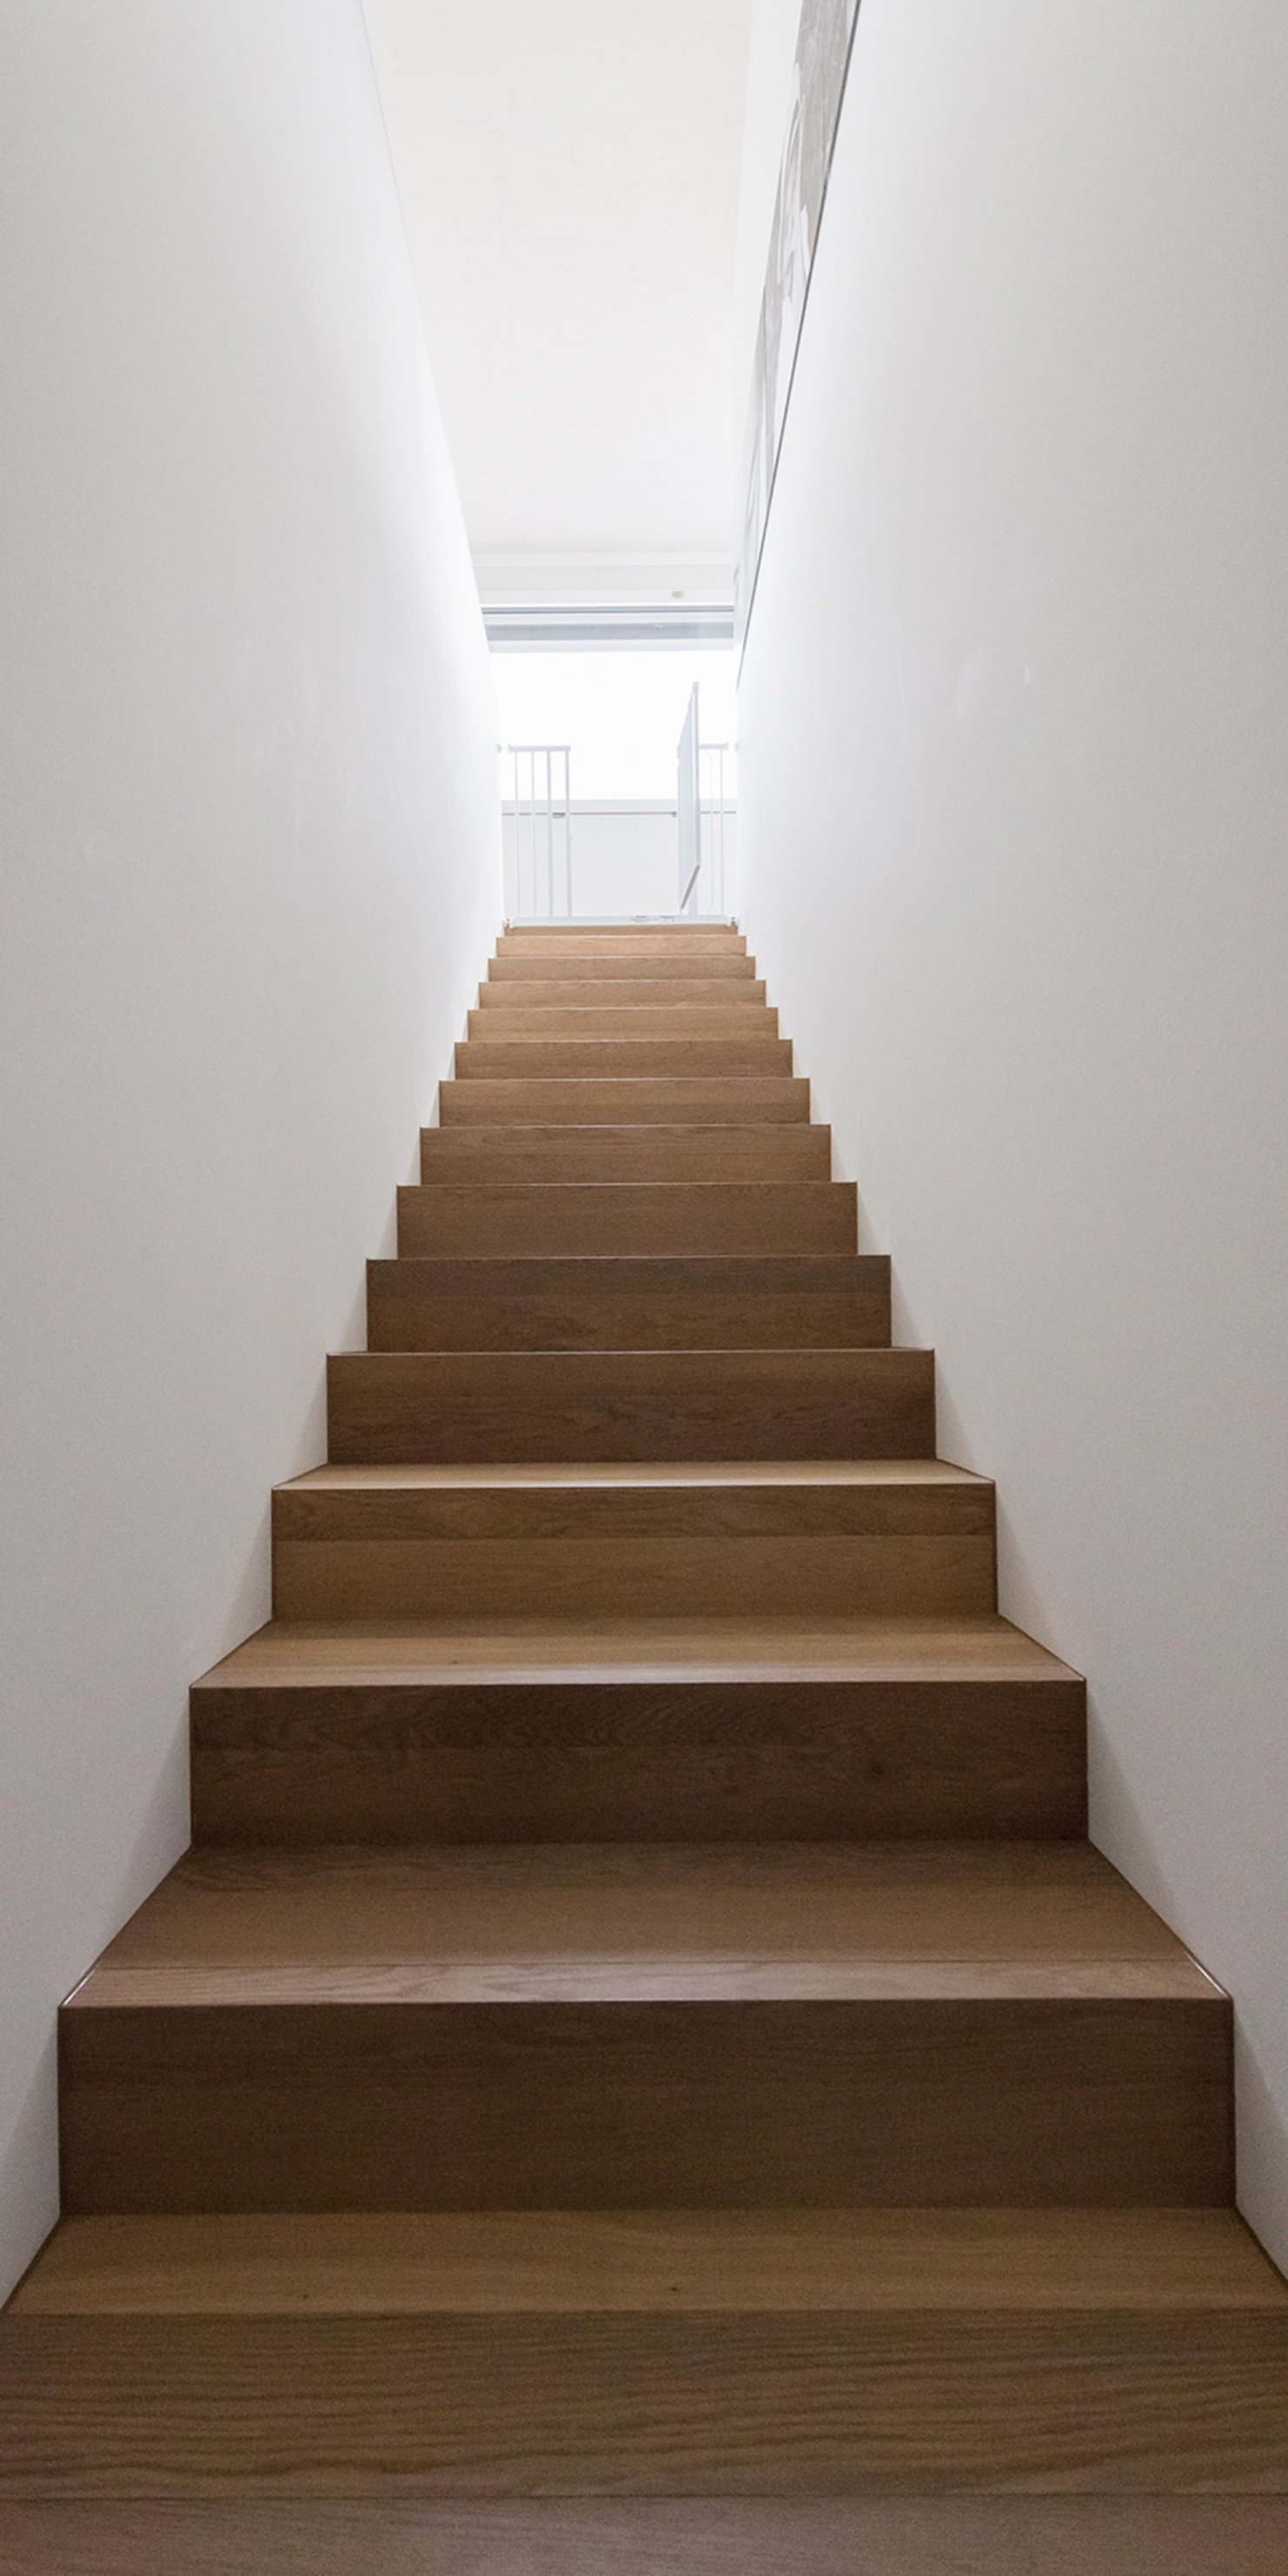 Aufnahme zeigt einen langen Treppenaufgang im Innenbereich des Einfamilienhauses mit Seeblick